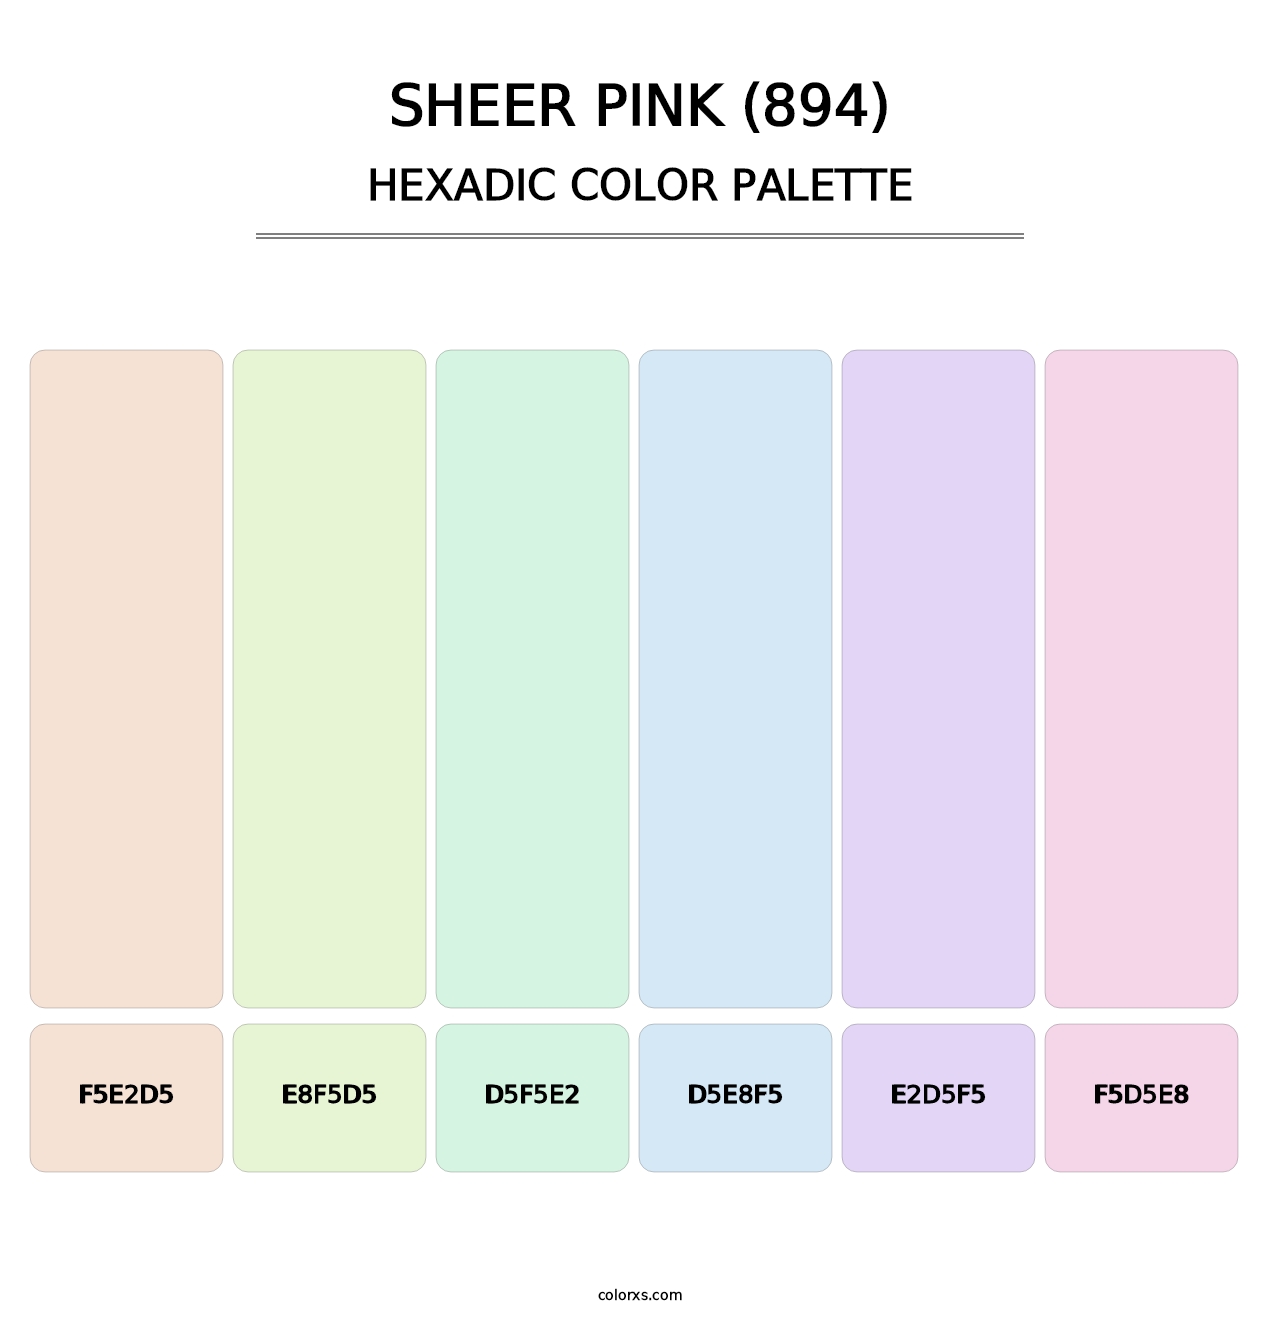 Sheer Pink (894) - Hexadic Color Palette